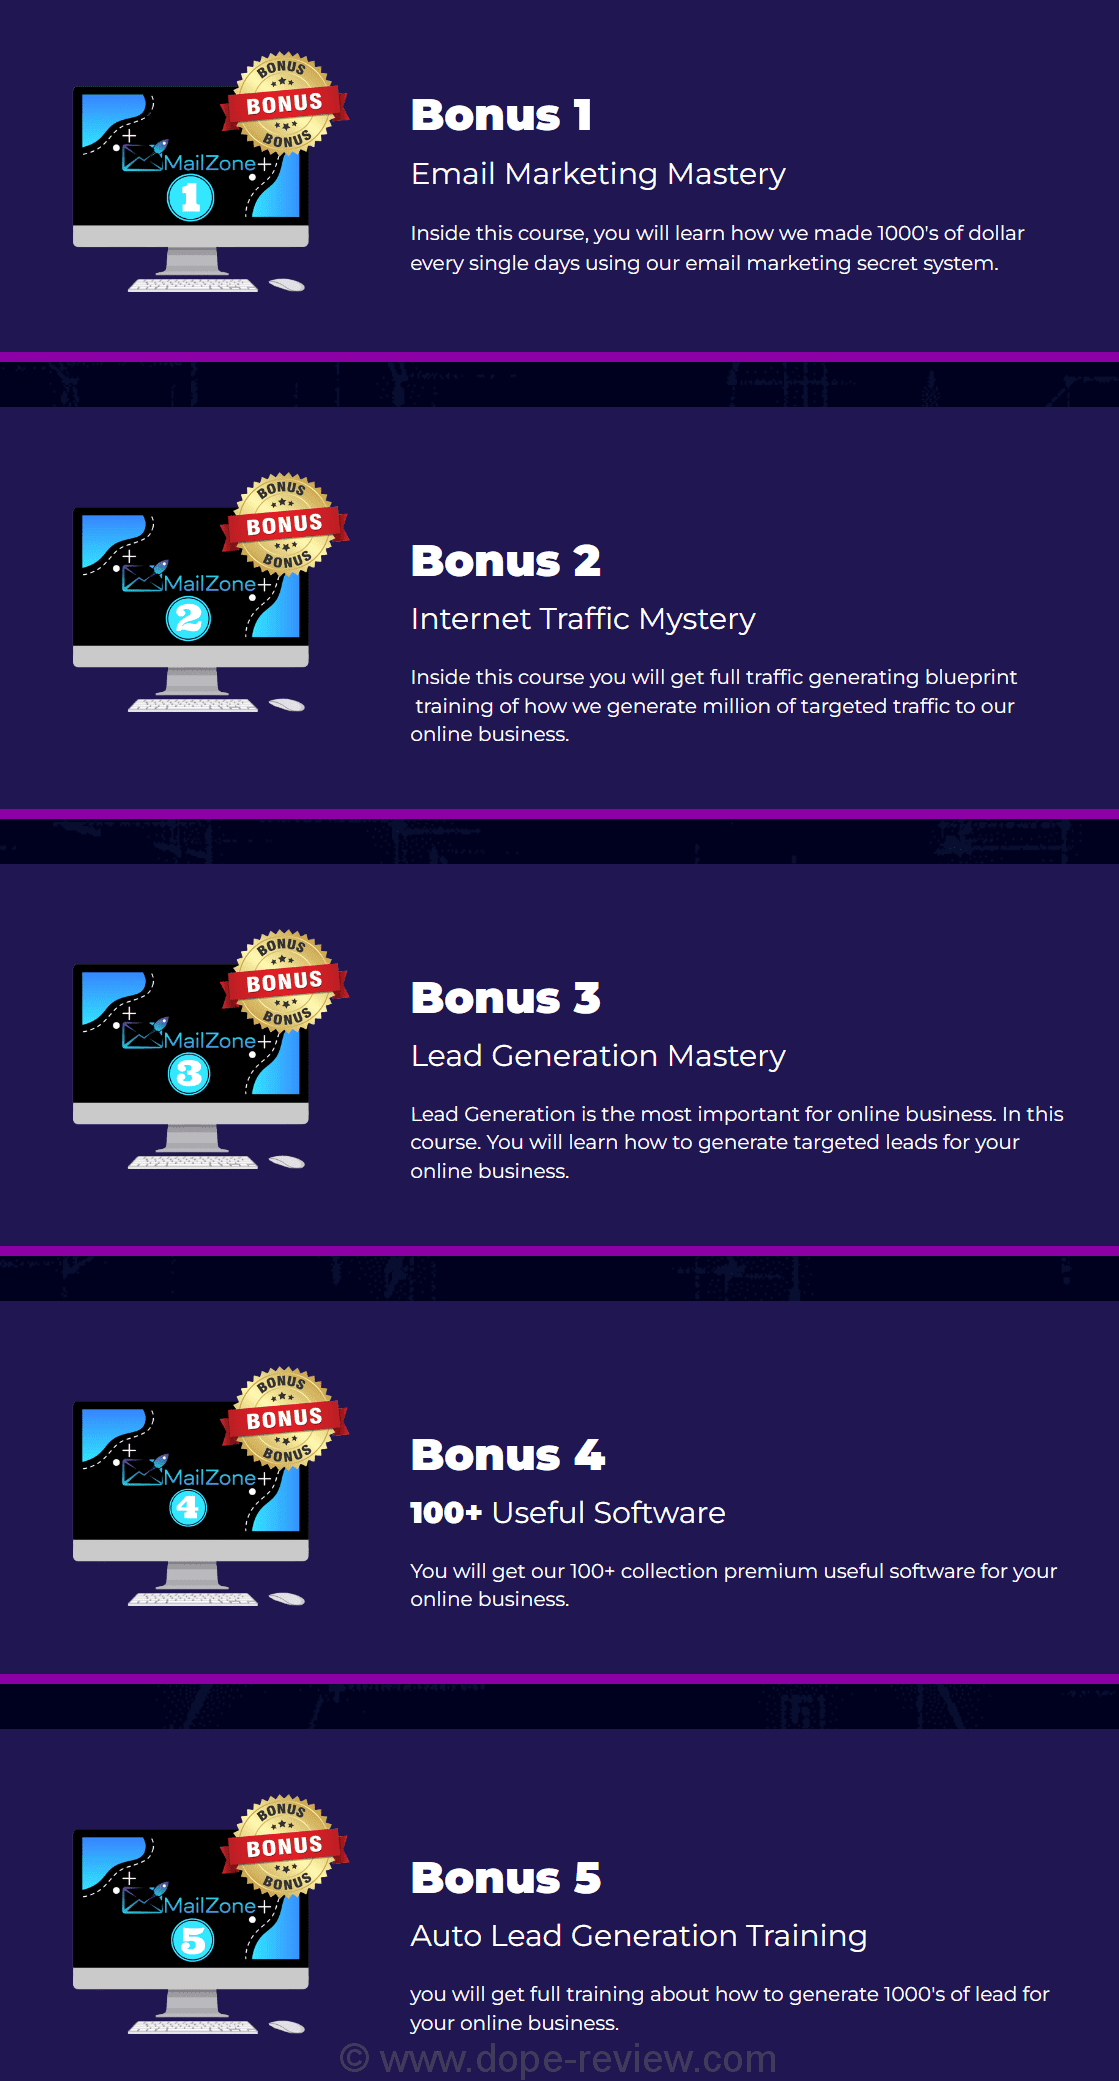 MailZone Bonus